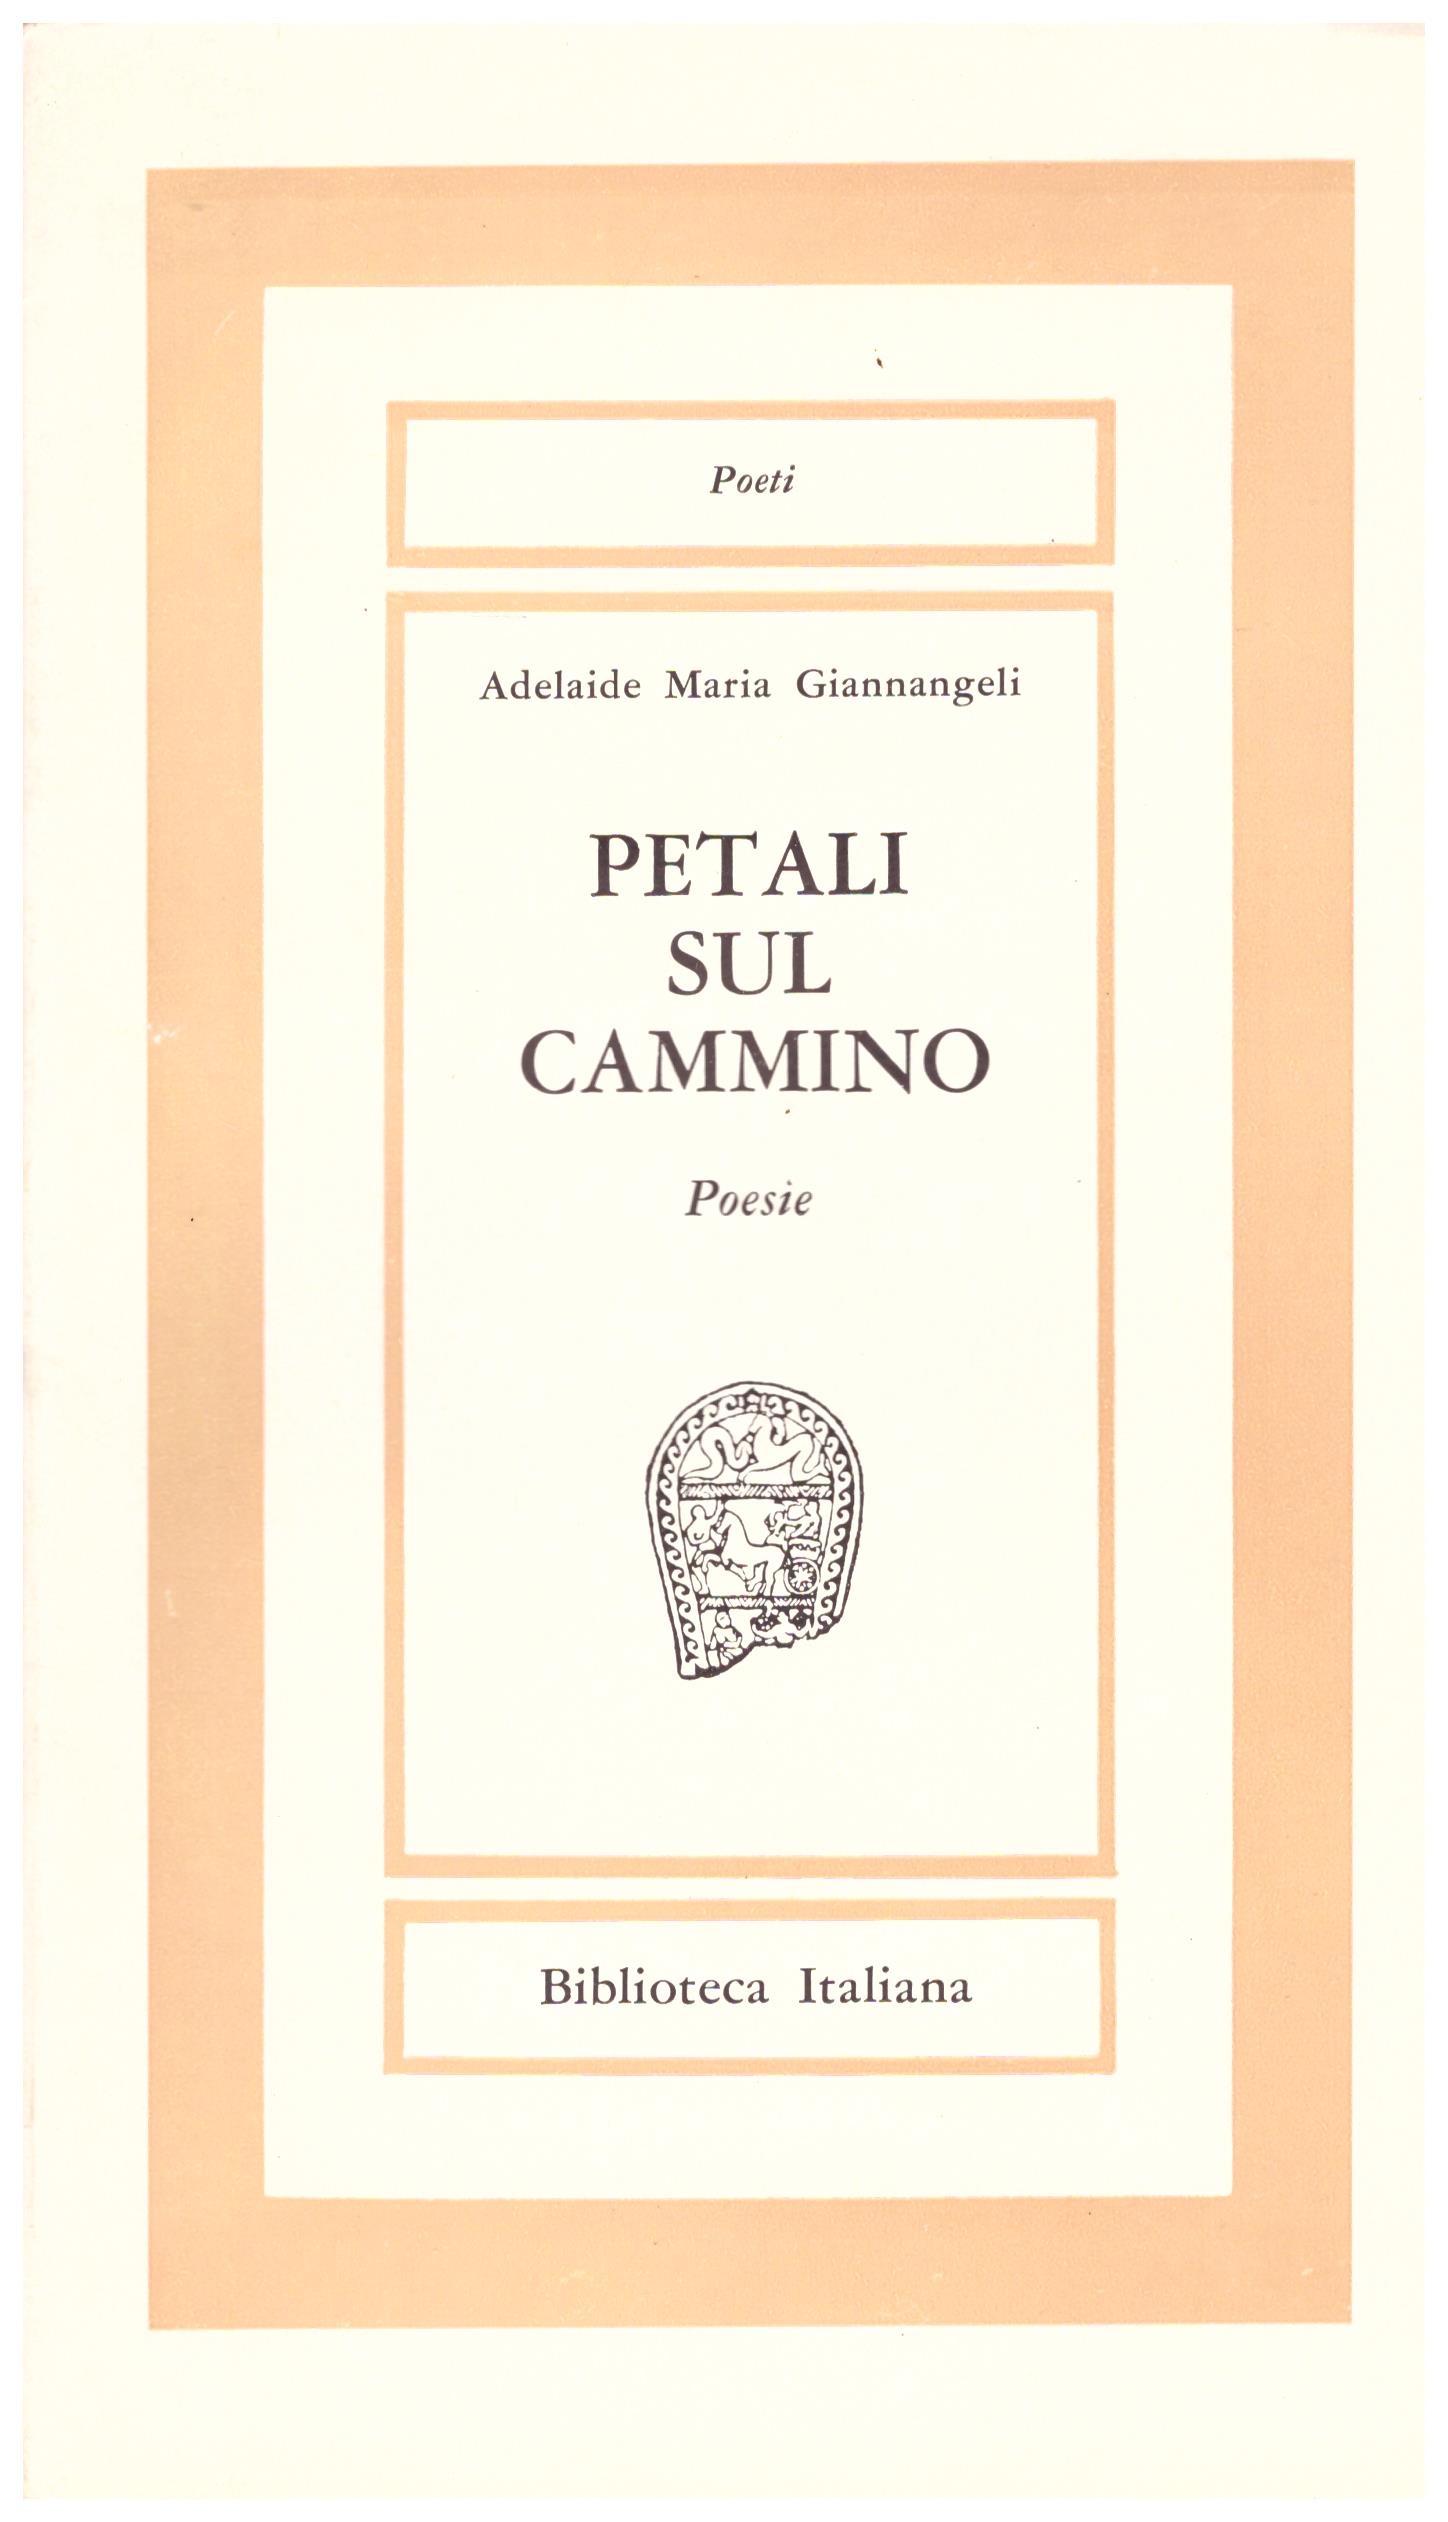 Titolo: Petali sul cammino    Autore: Adelaide Maria Giannangeli    Editore: Tipografia s.t.a.f.